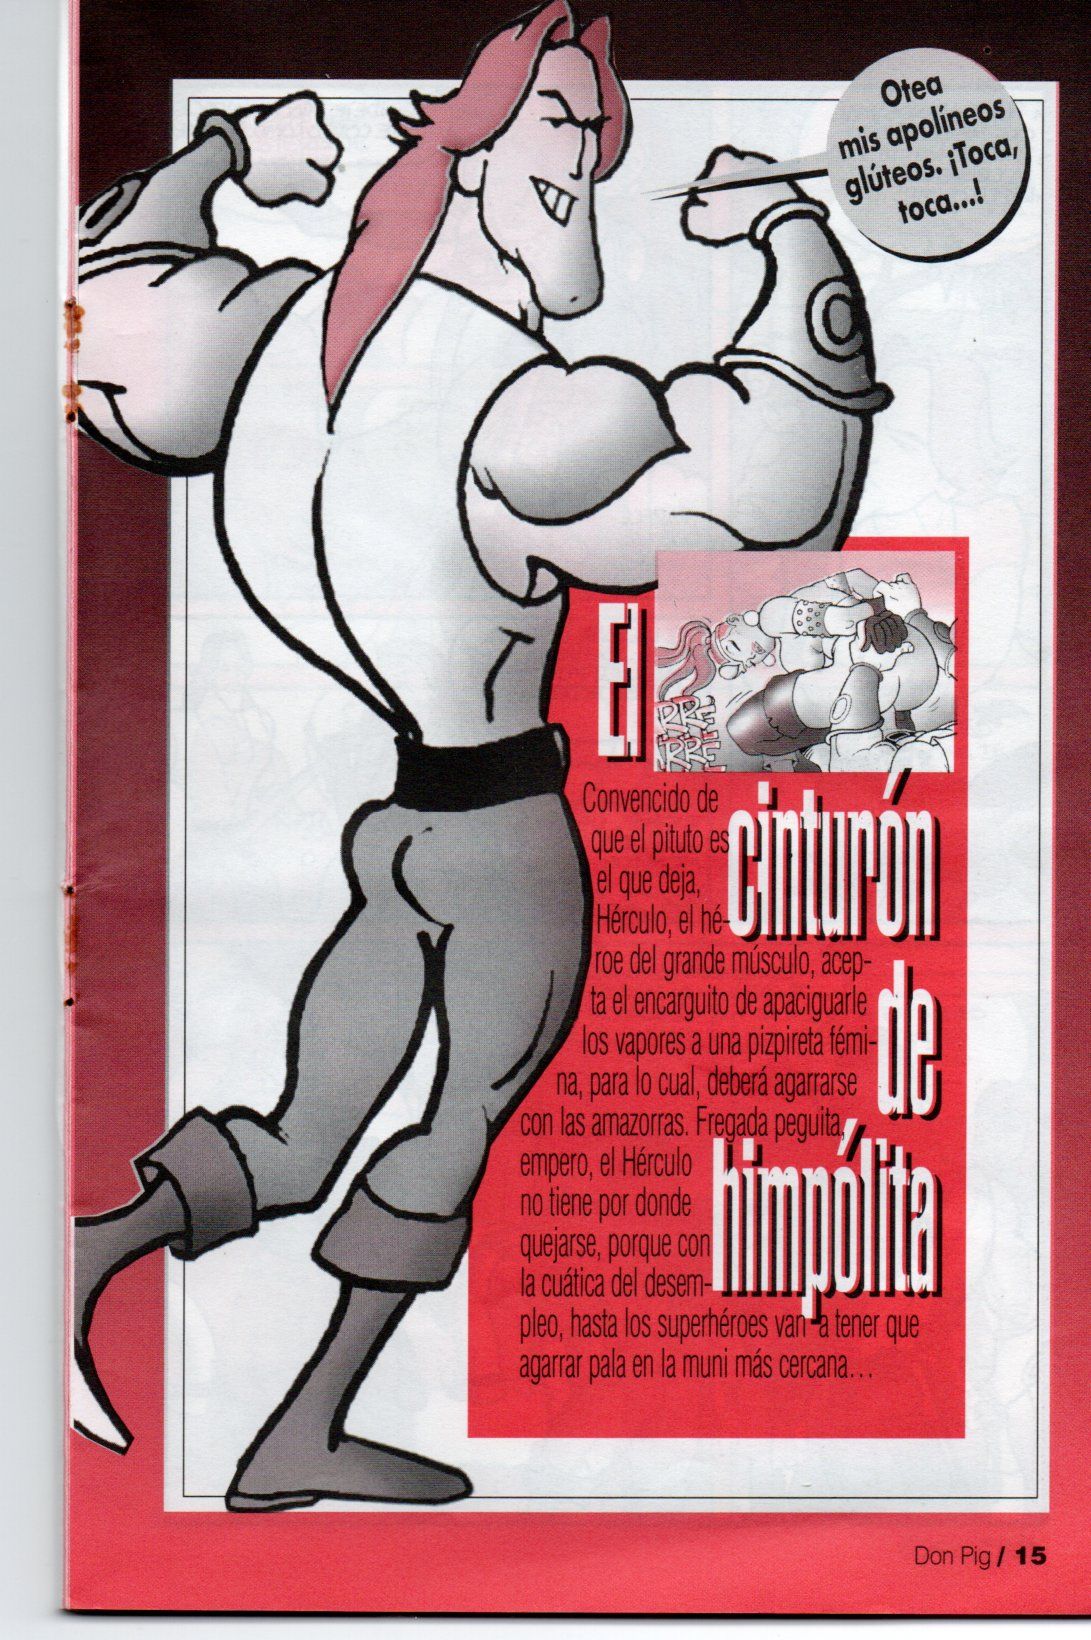 Don Pig El cinturon de Hipolita Don Pig El cinturon de Hipolita Español 15